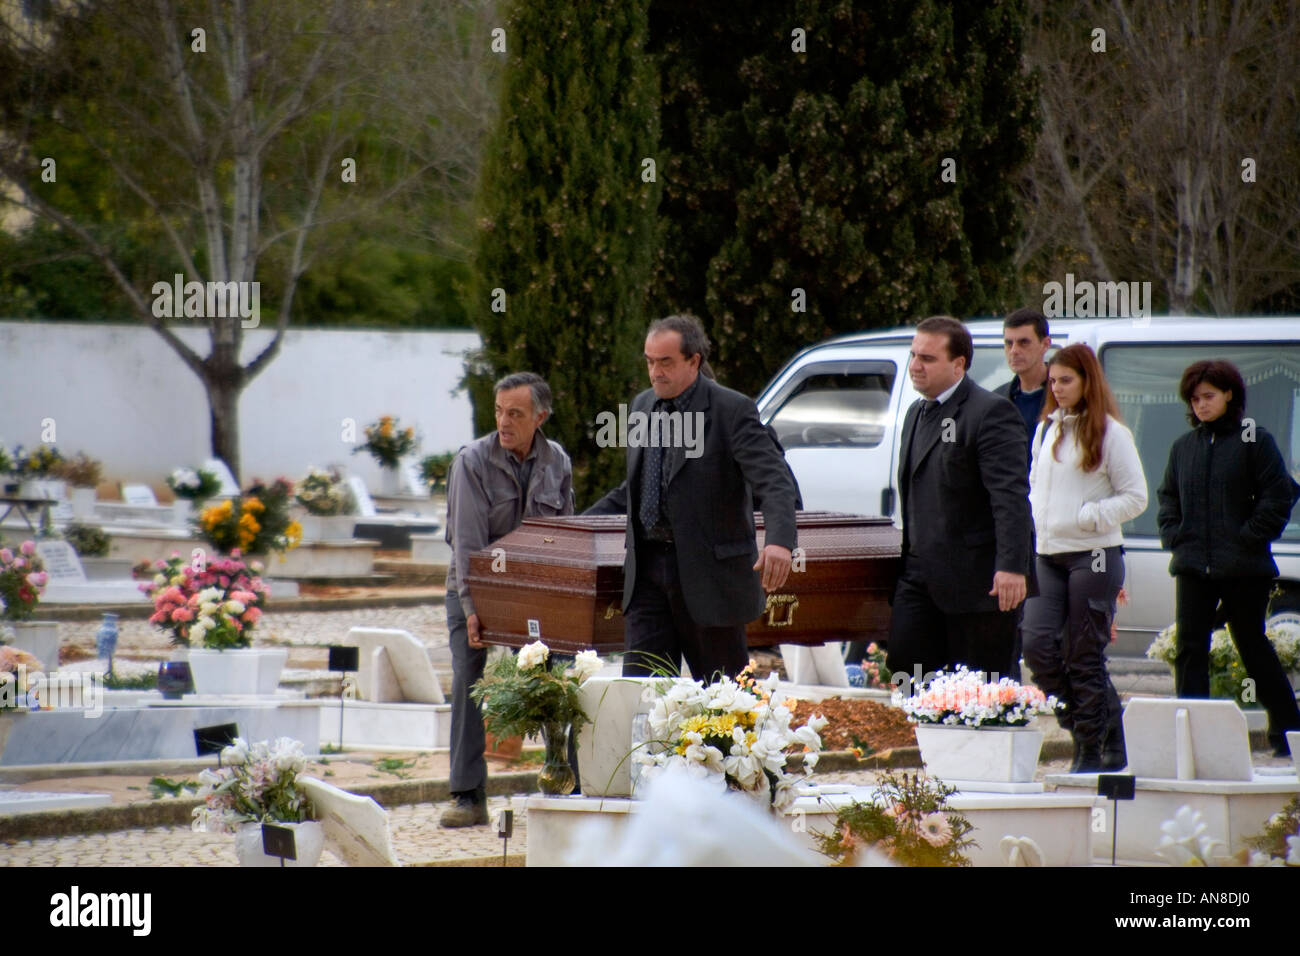 ESTORIL PORTUGAL Sargträger mit Sarg sind gefolgt von Familienmitgliedern ankommen für die Beerdigung im Friedhof Stockfoto